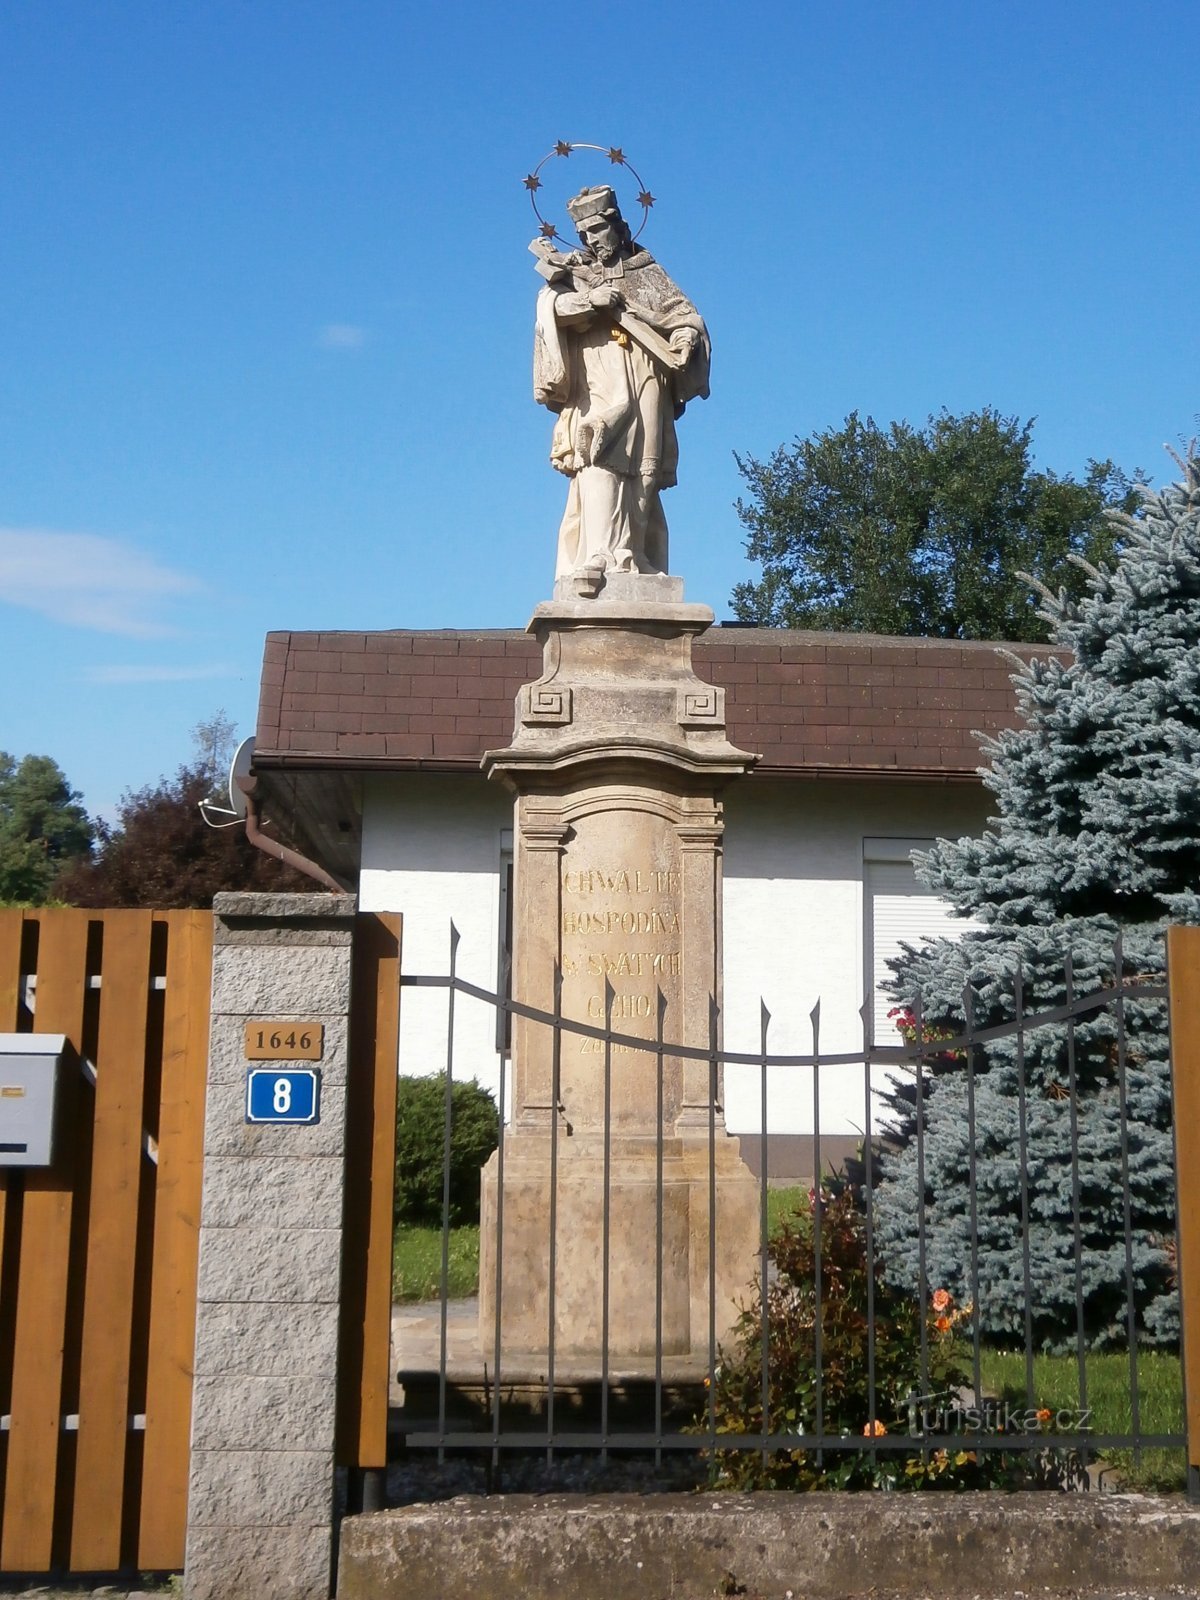 Статуя св. Ян Непомуцкий на улице Медковой (Градец Кралове, 29.7.2017)